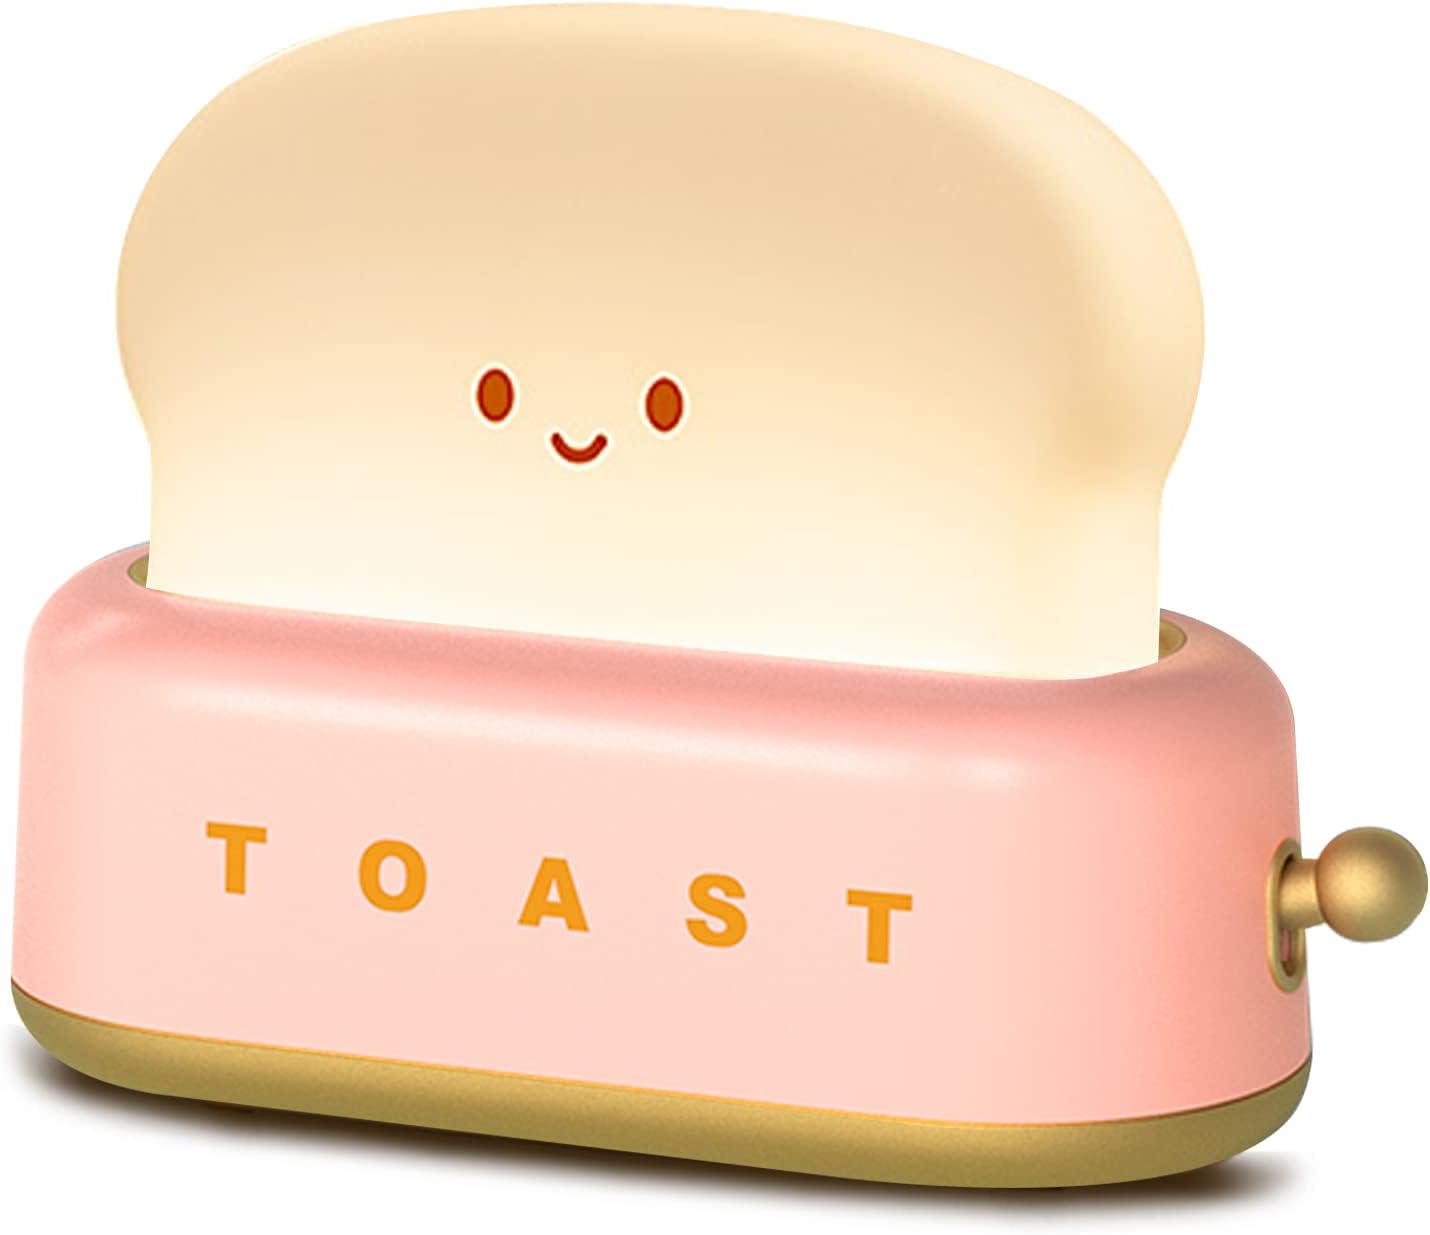 Retro Toast Lamp